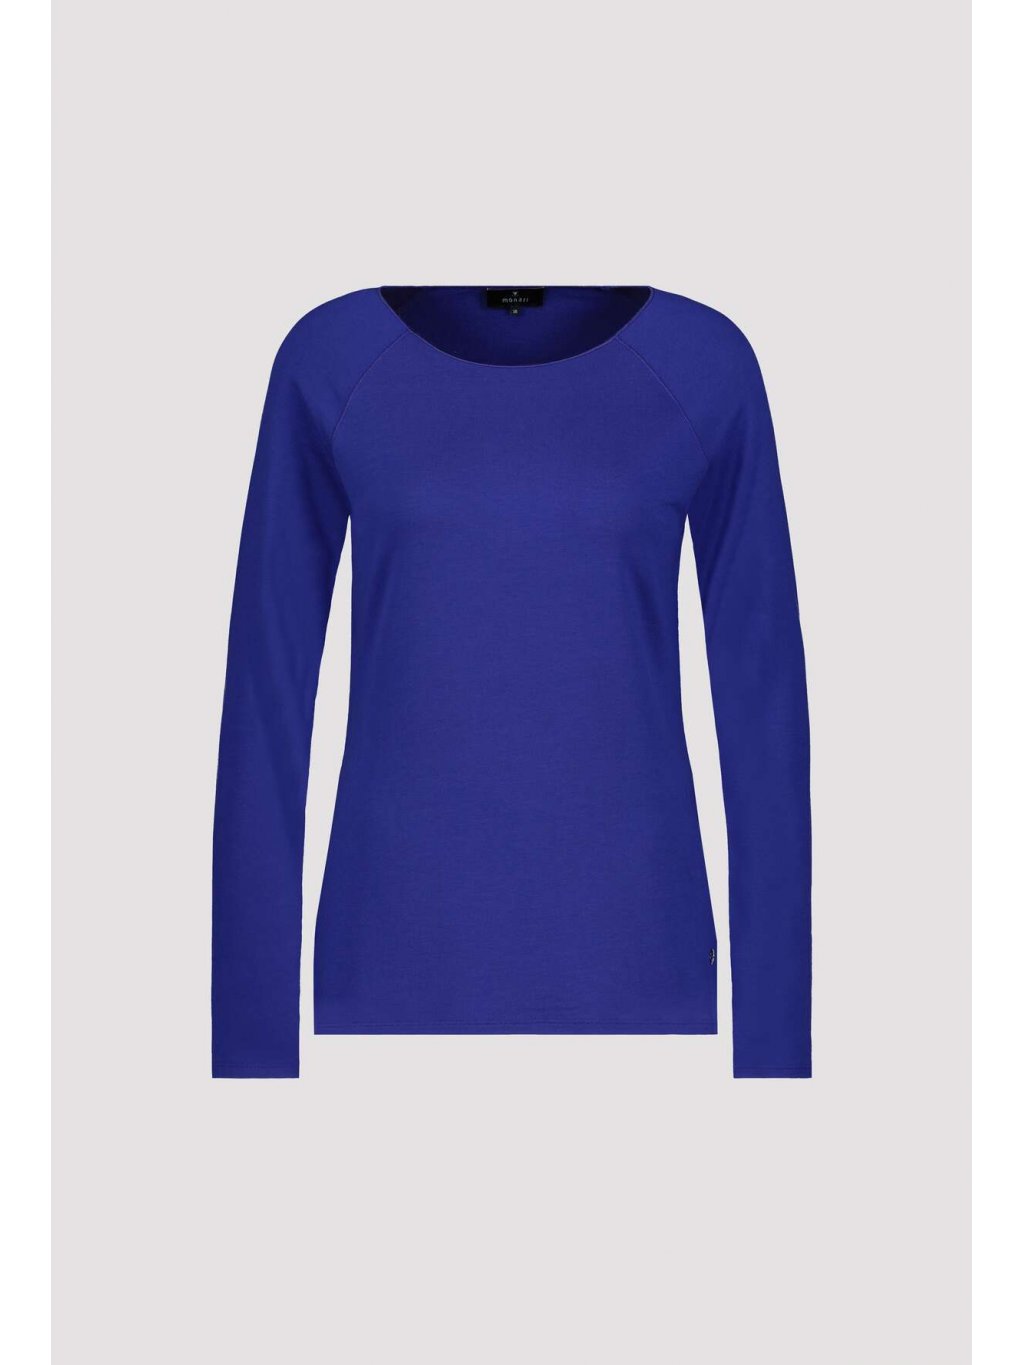 Tričko Monari 6755 royal modré jemné basic kousek